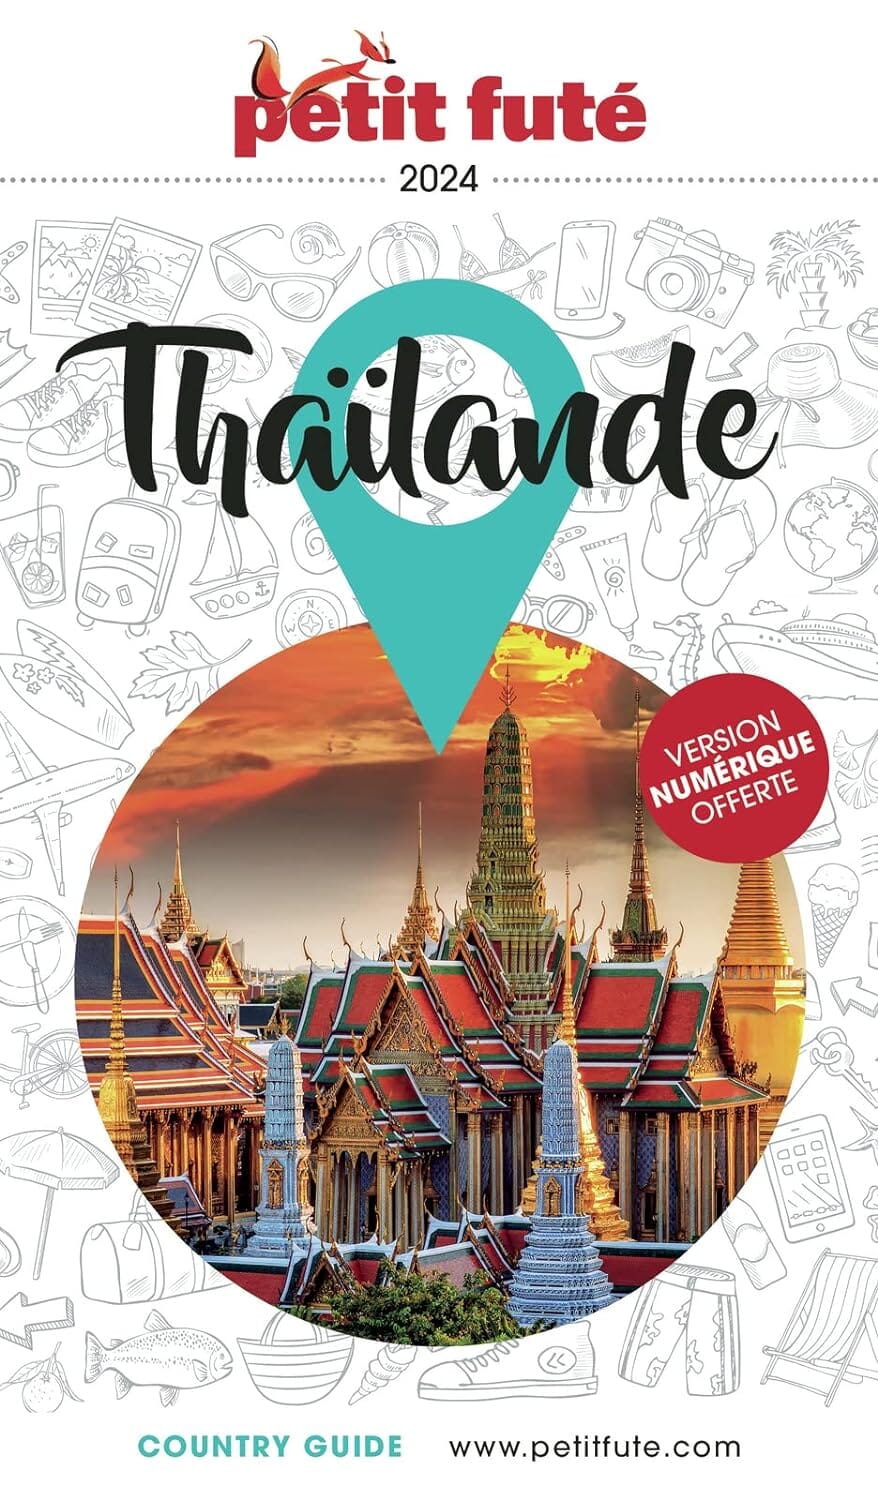 Guide de voyage - Thaïlande 2024 | Petit Futé guide de voyage Petit Futé 